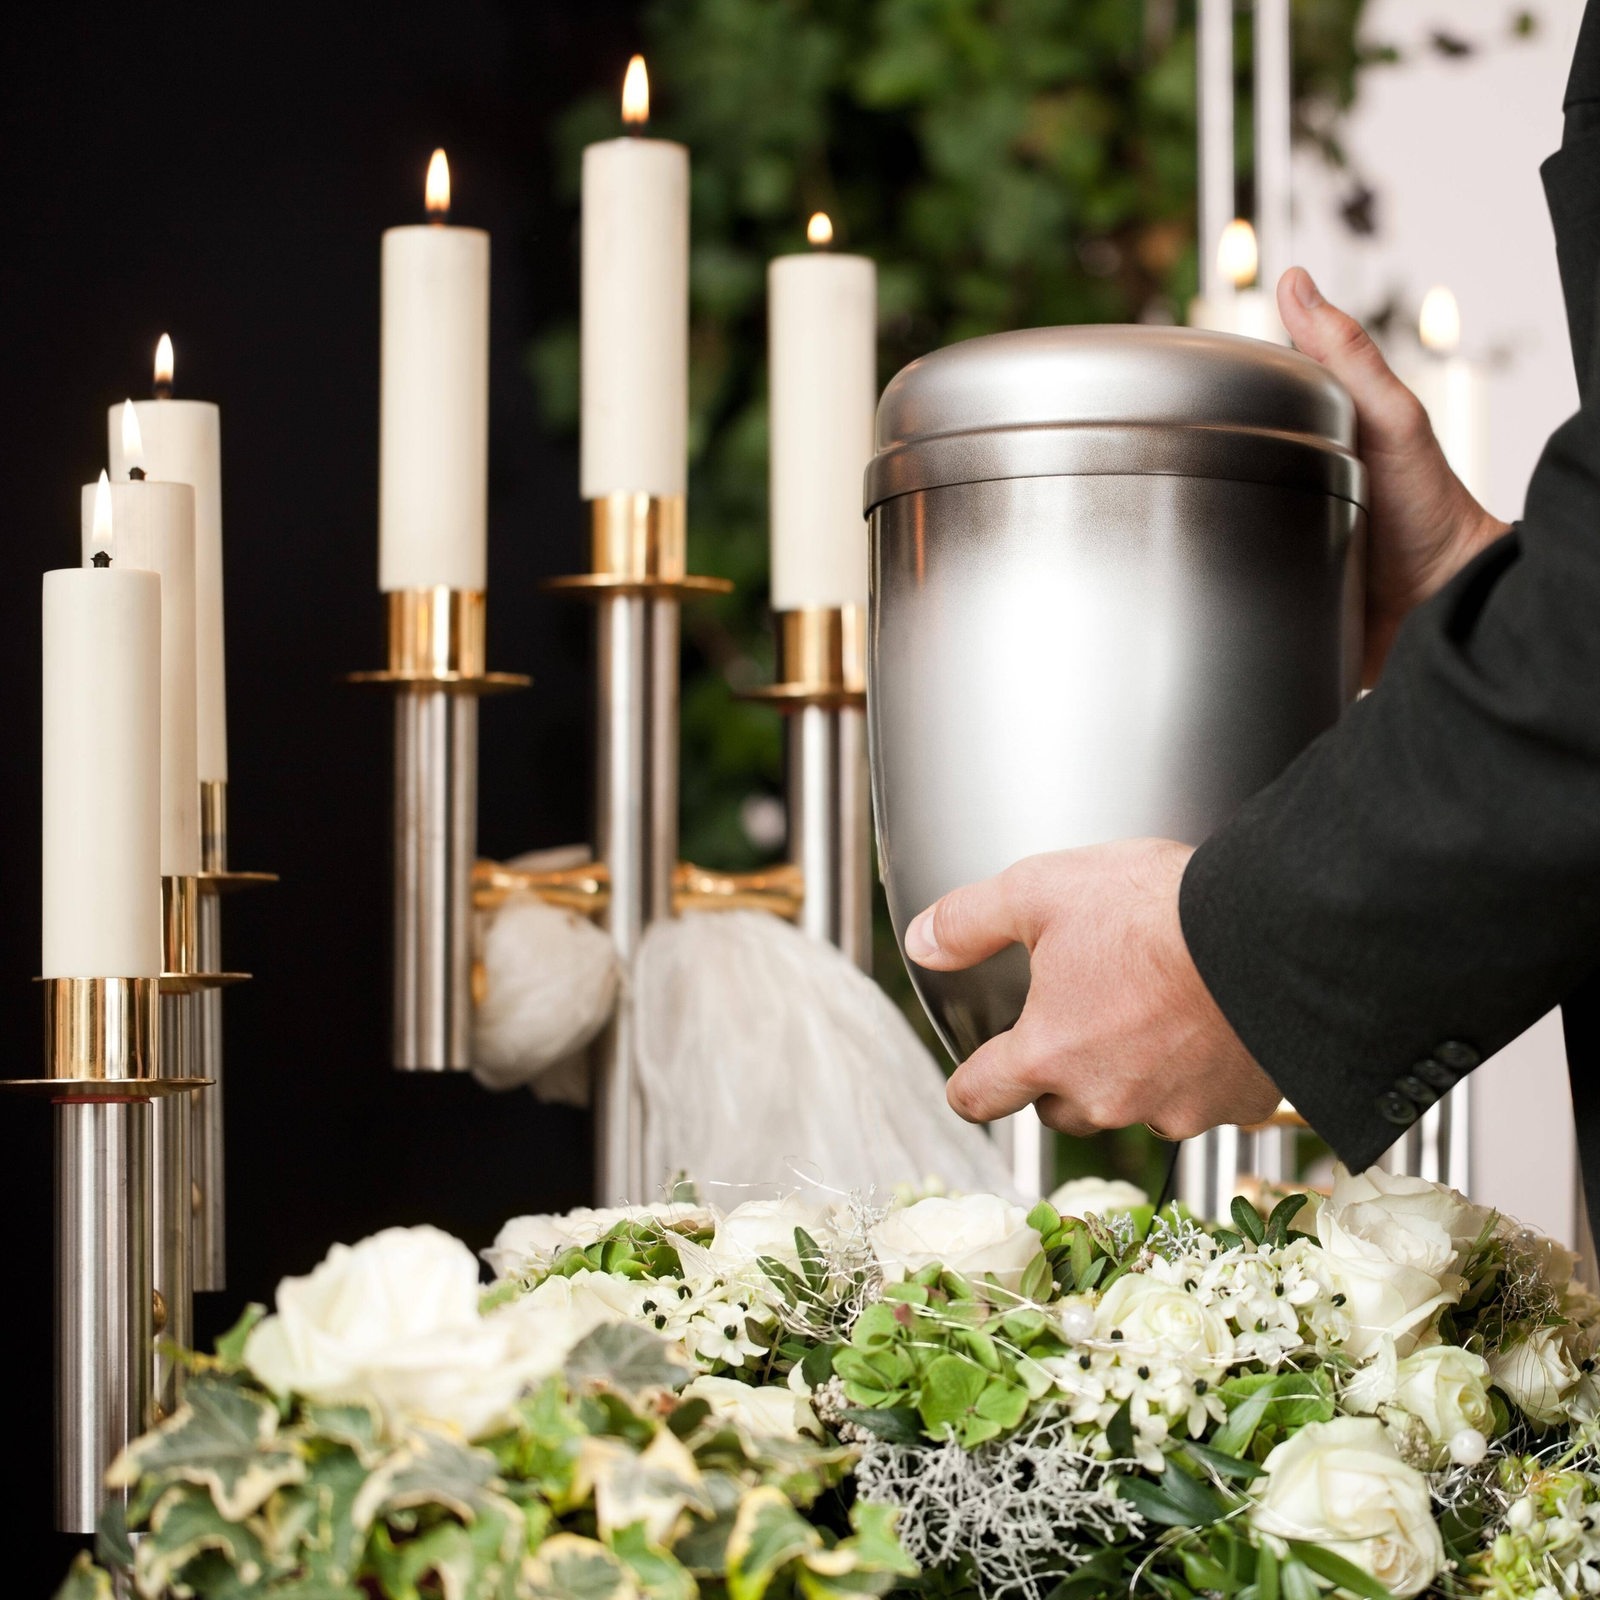 Baumgardner funeral & cremation service